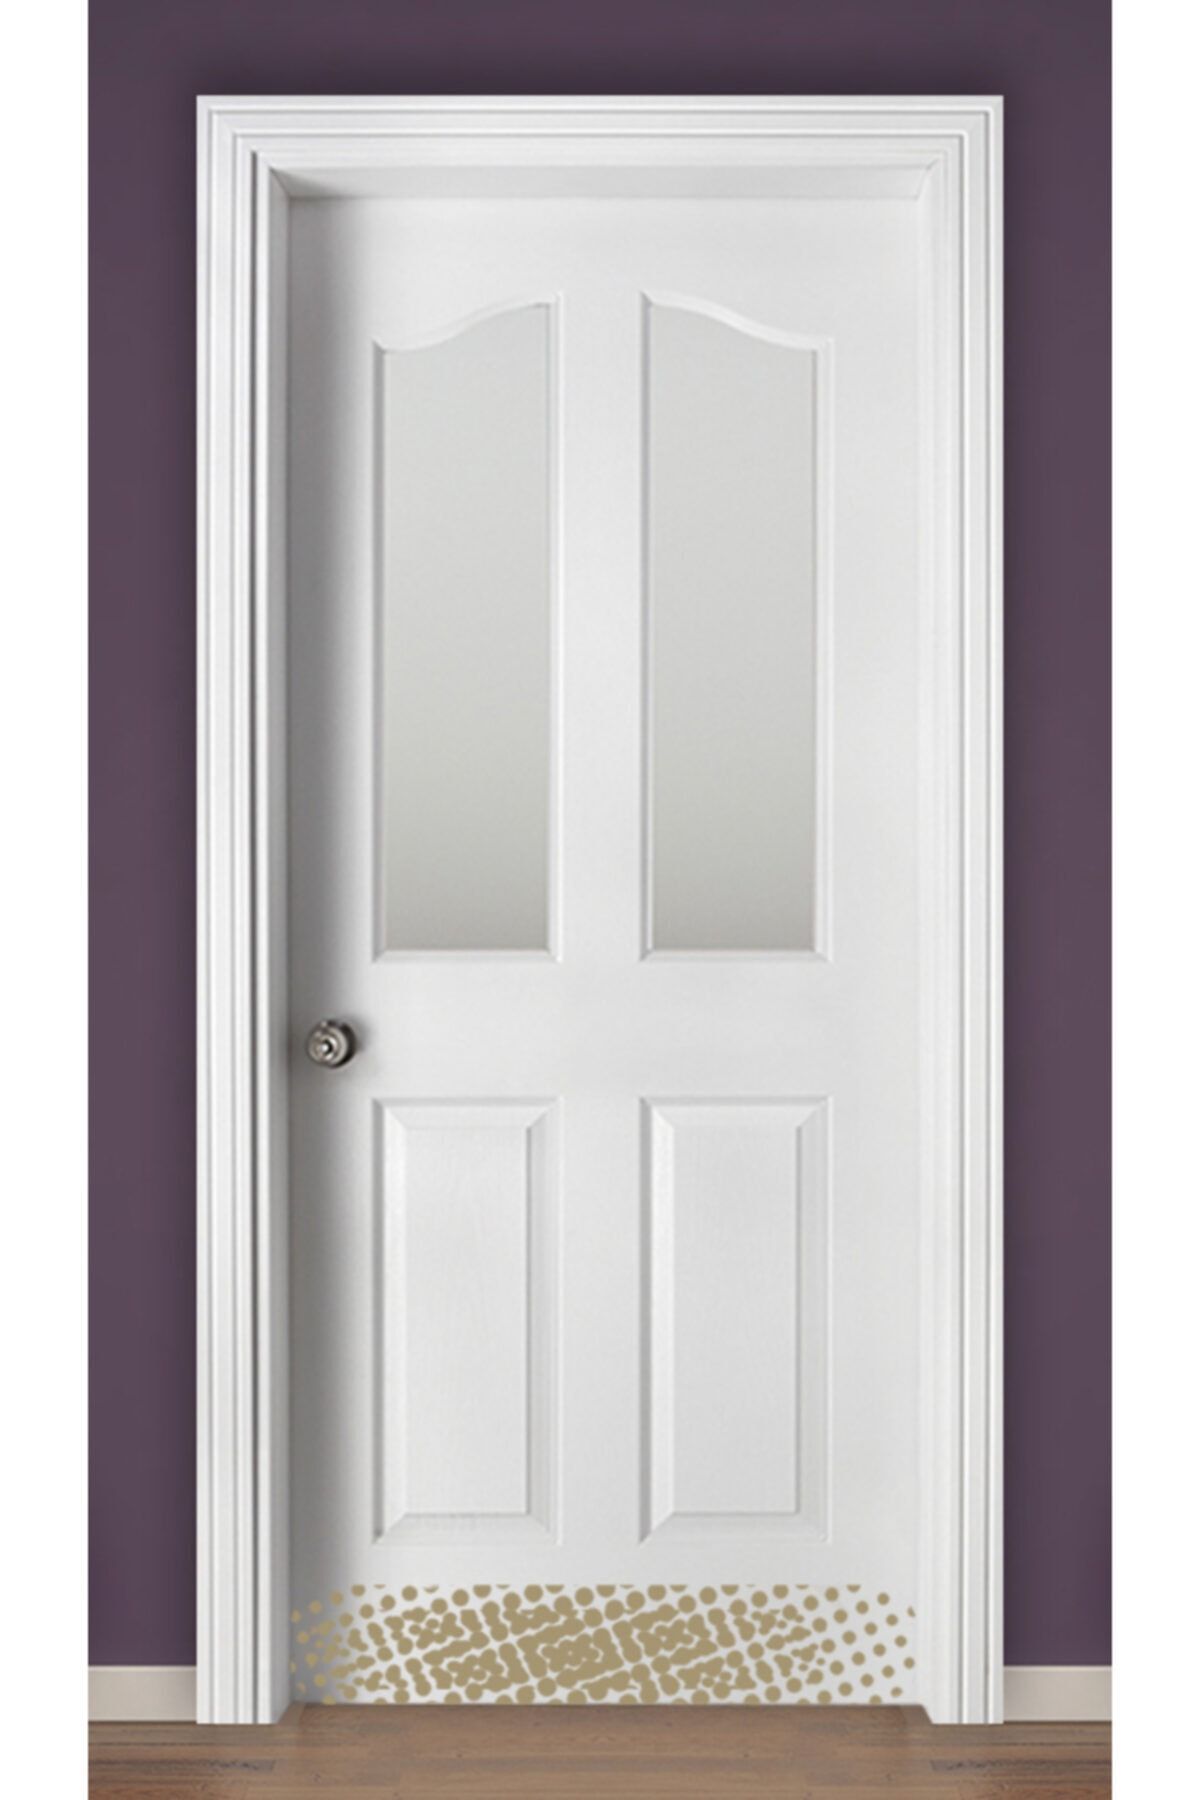 soylu kapi iç mekan kapısı imalatçıdan amerikan panel kapı fiyatı